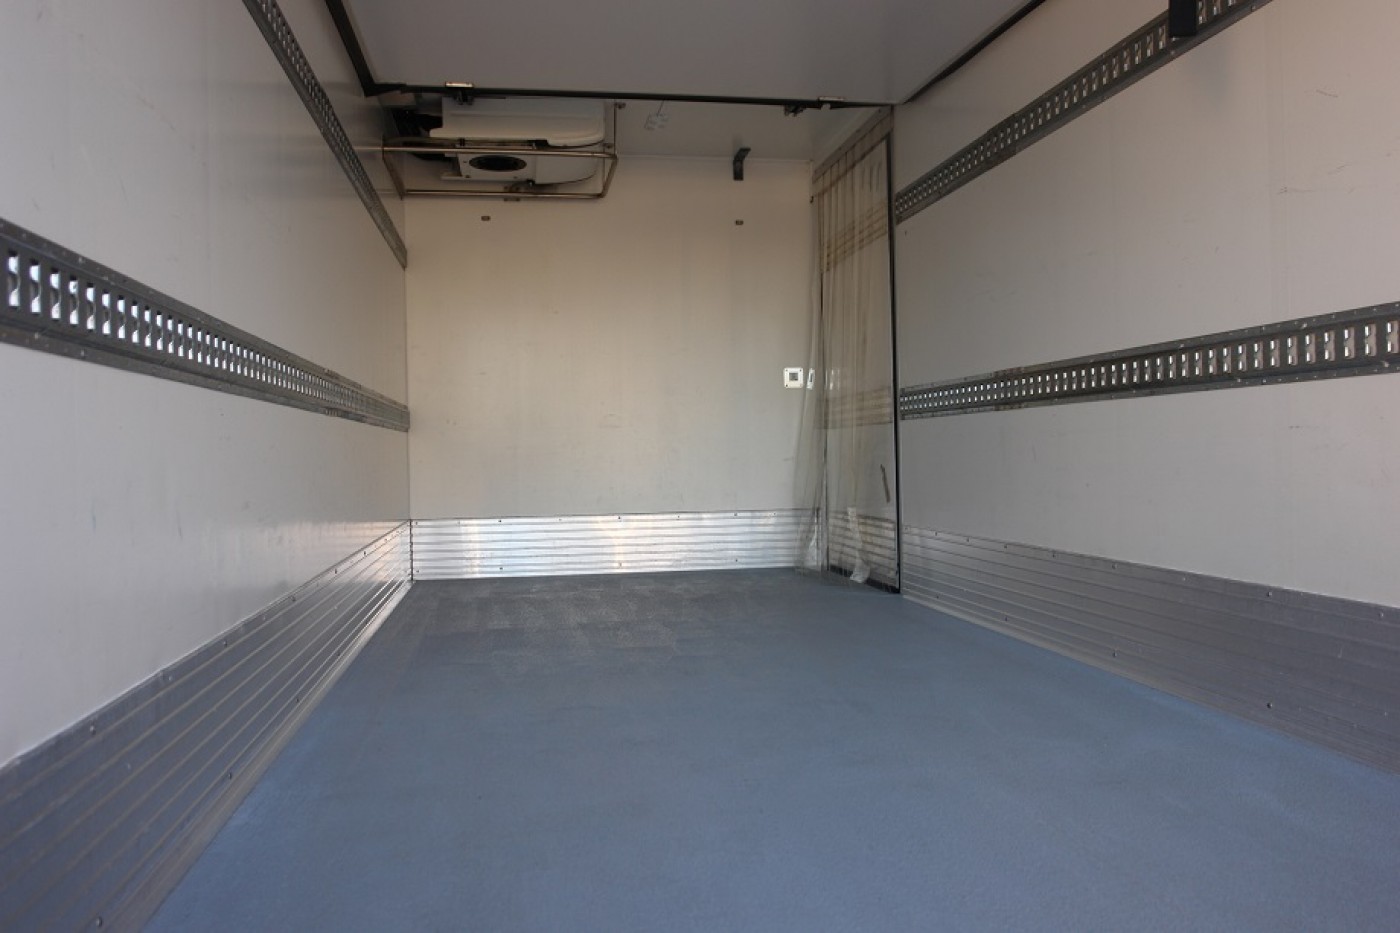 Iveco Daily 70C17 fridge box 5,30m Carrier Supra 750 Multi-Temperatur Silent +22°C  -32°C EURO5 ATP/FRC 11/2022 TÜV! Servicebook! 